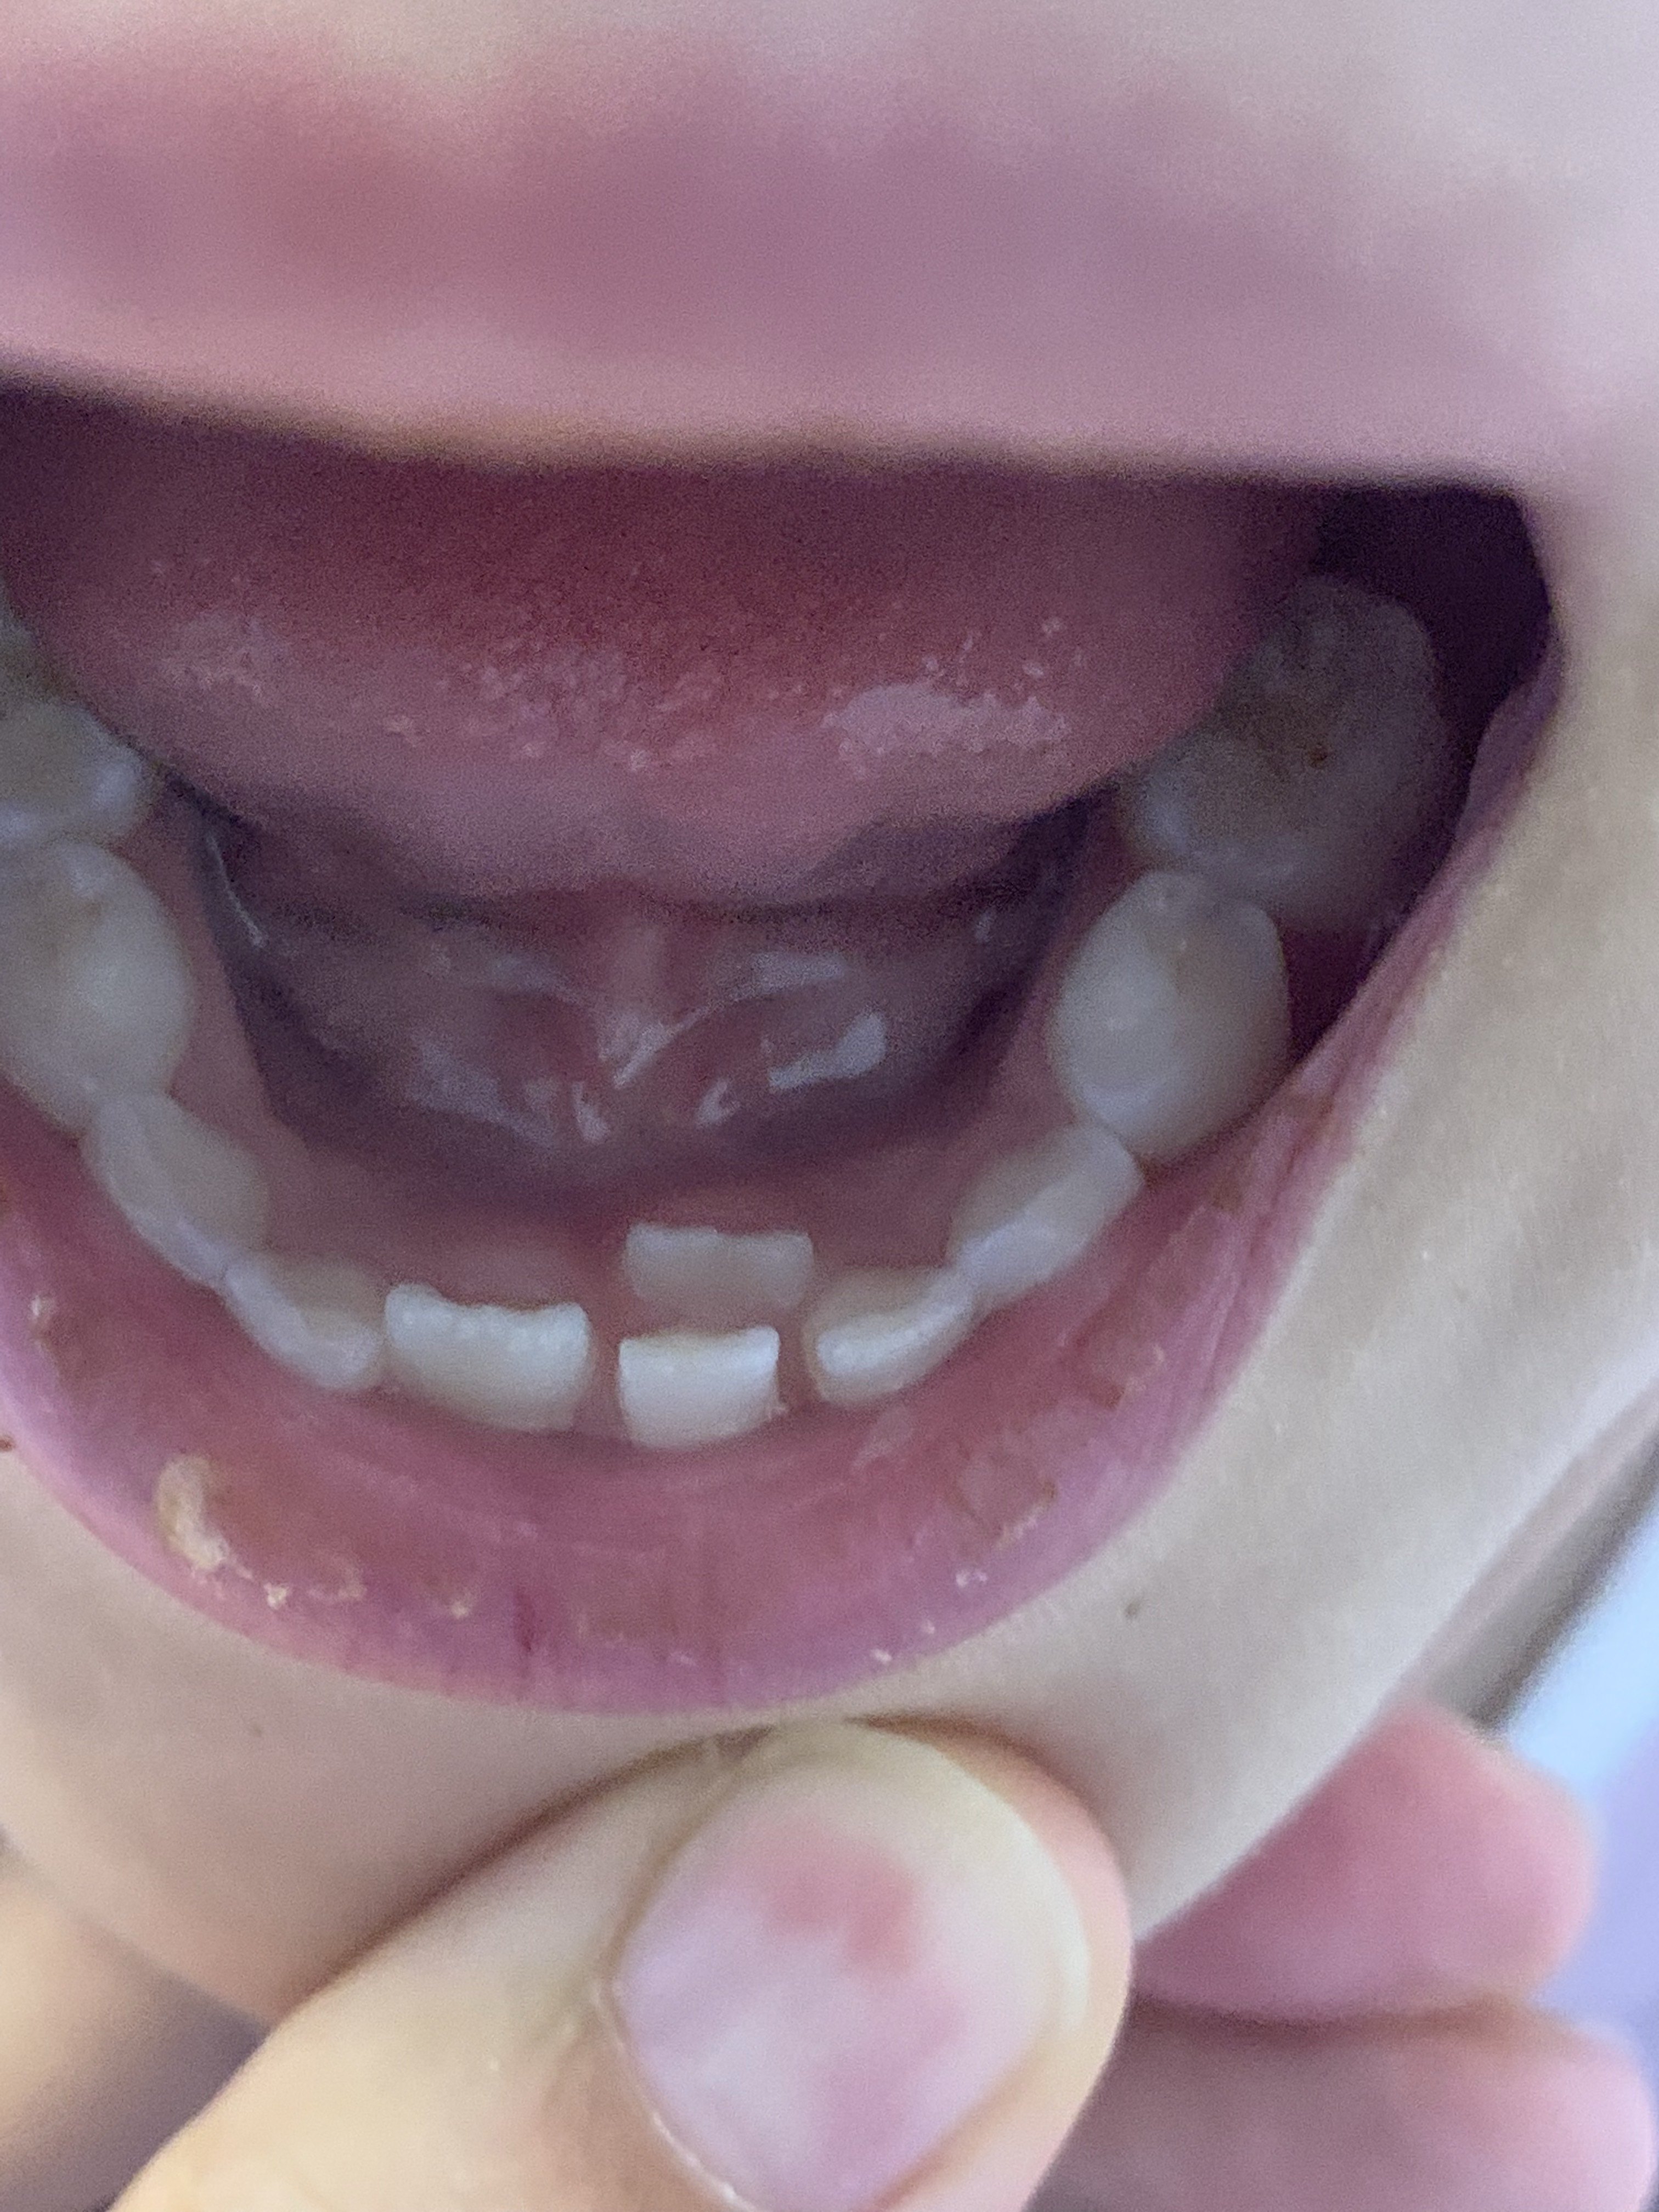 儿童乳牙牙根戳破牙龈图片